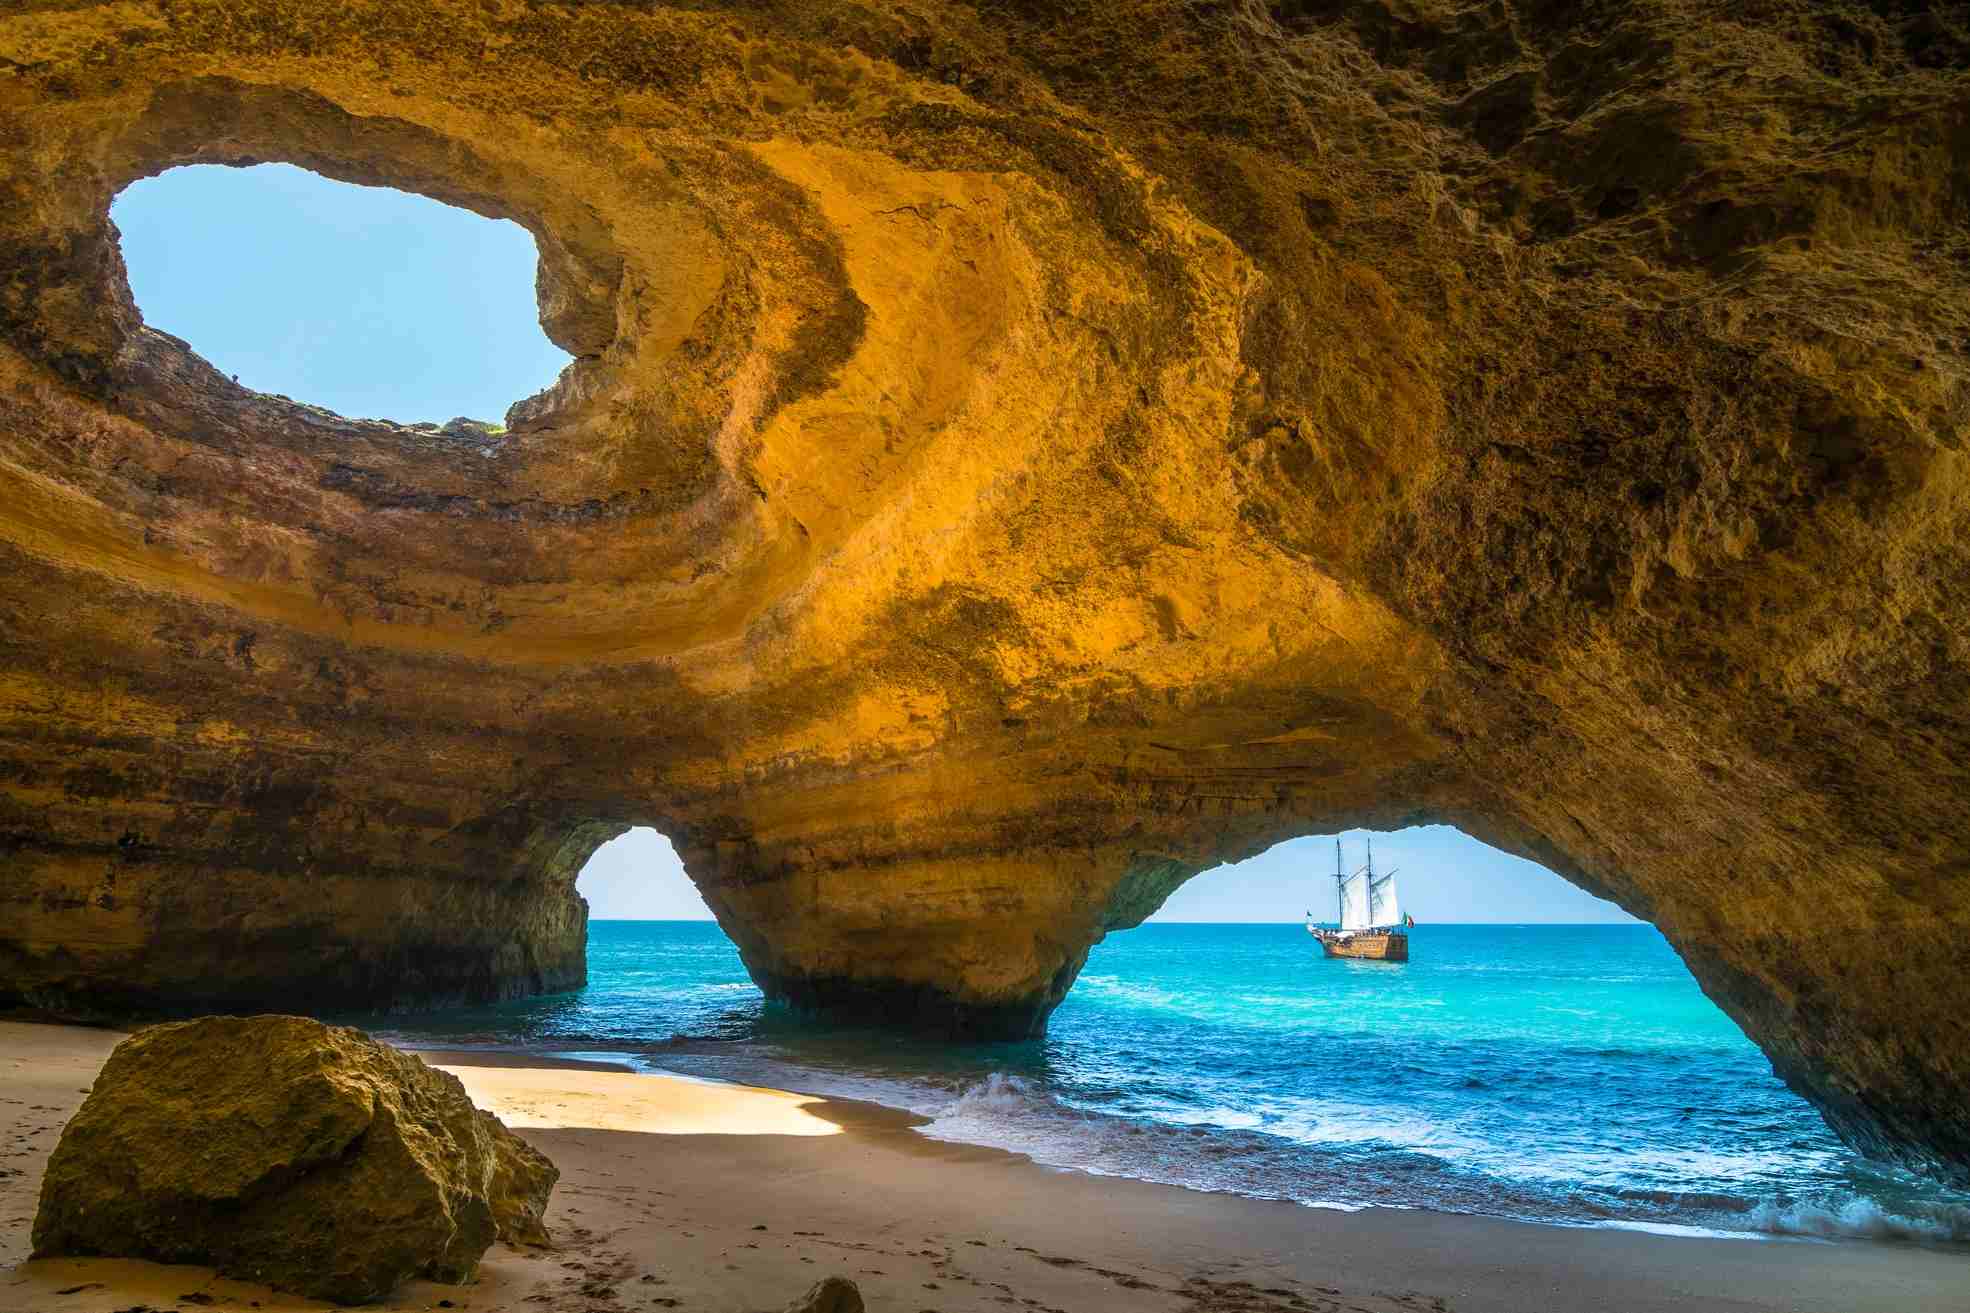 Где лучше пляжный отдых в португалии? - советы, вопросы и ответы путешественникам на трипстере